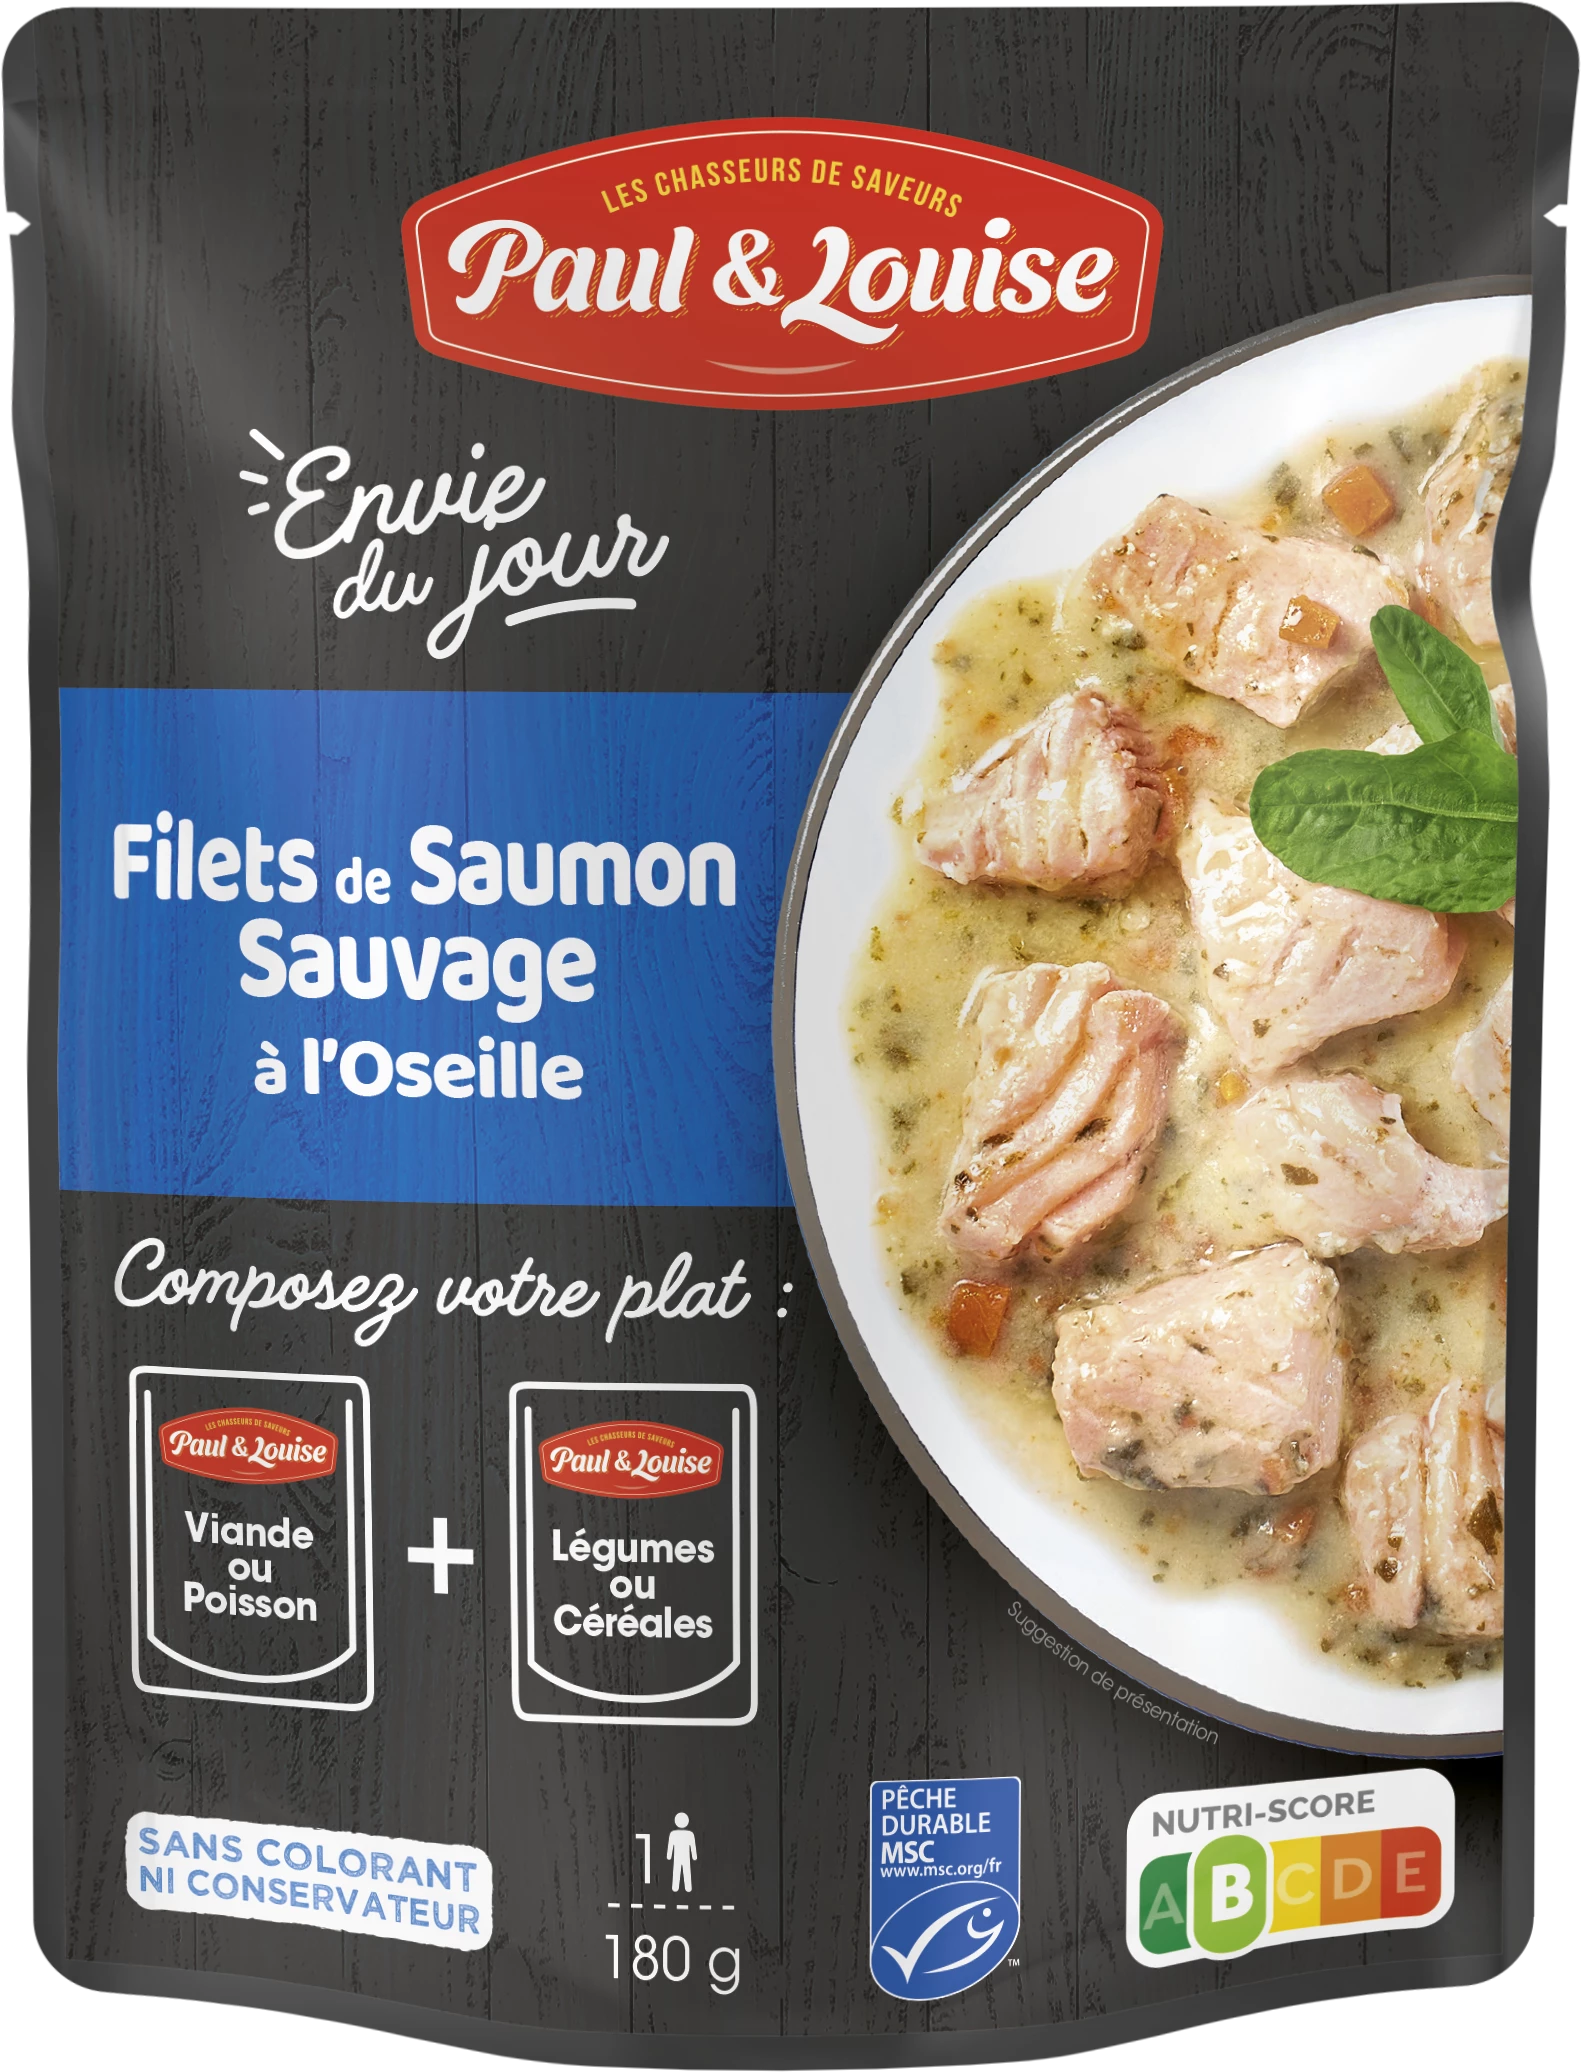 Filet Saumon  Sauvage à l'Oseil le, 180g PAUL & LOUISE